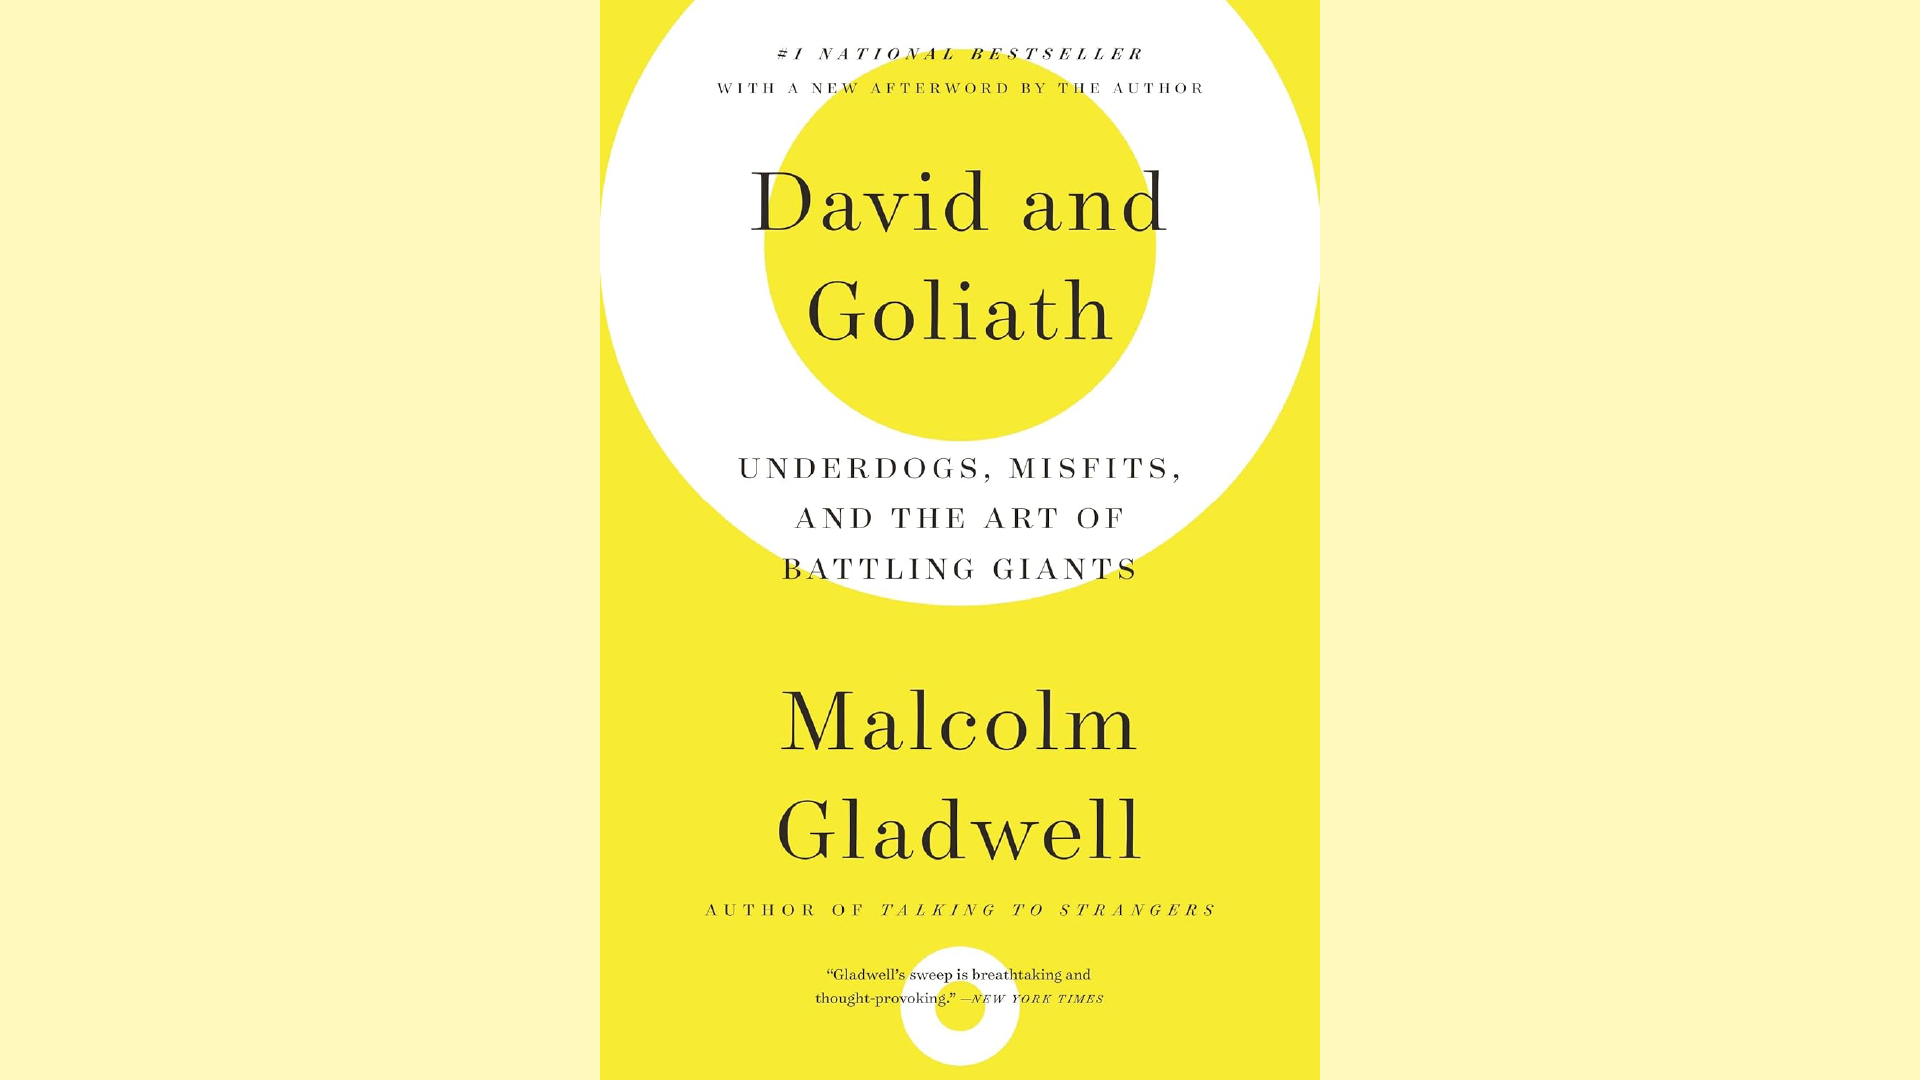 Summary: David and Goliath by Malcolm Gladwell